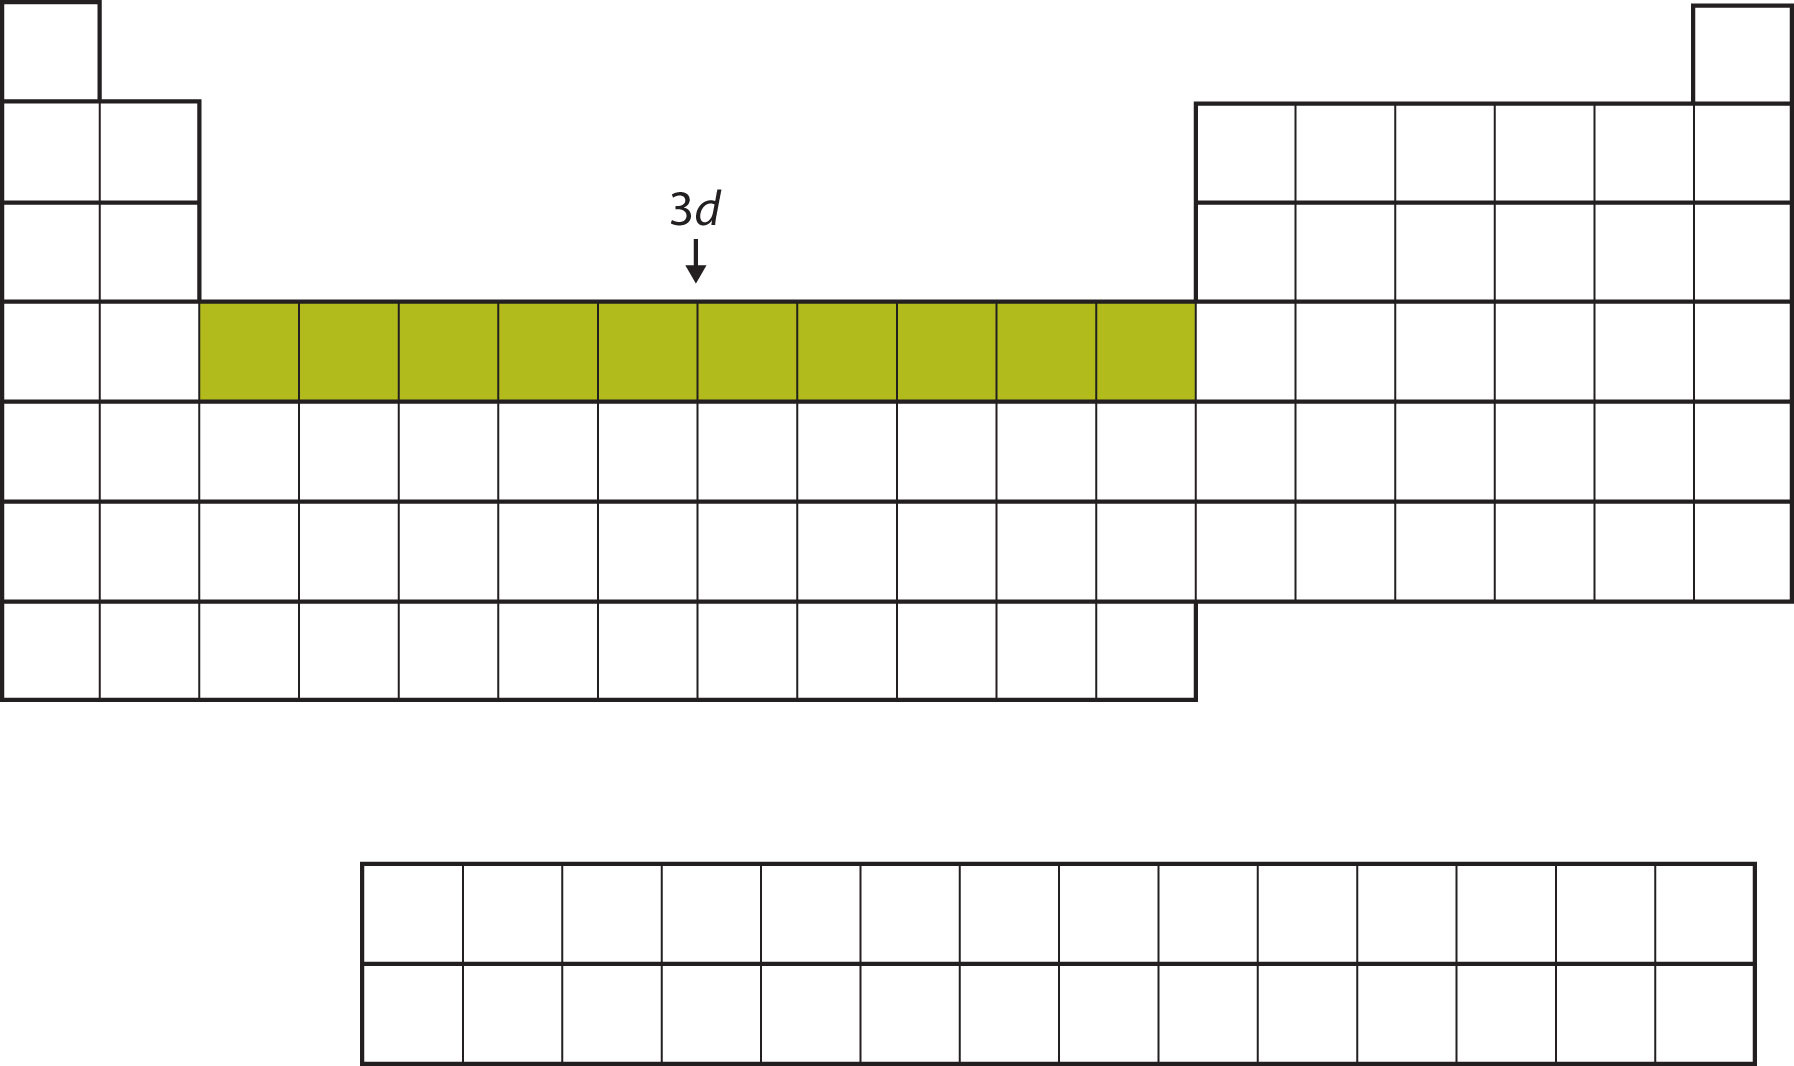 Tabla periódica vacía, con 10 cuadrados en la cuarta fila en el centro rellenos en un color verde mostaza.